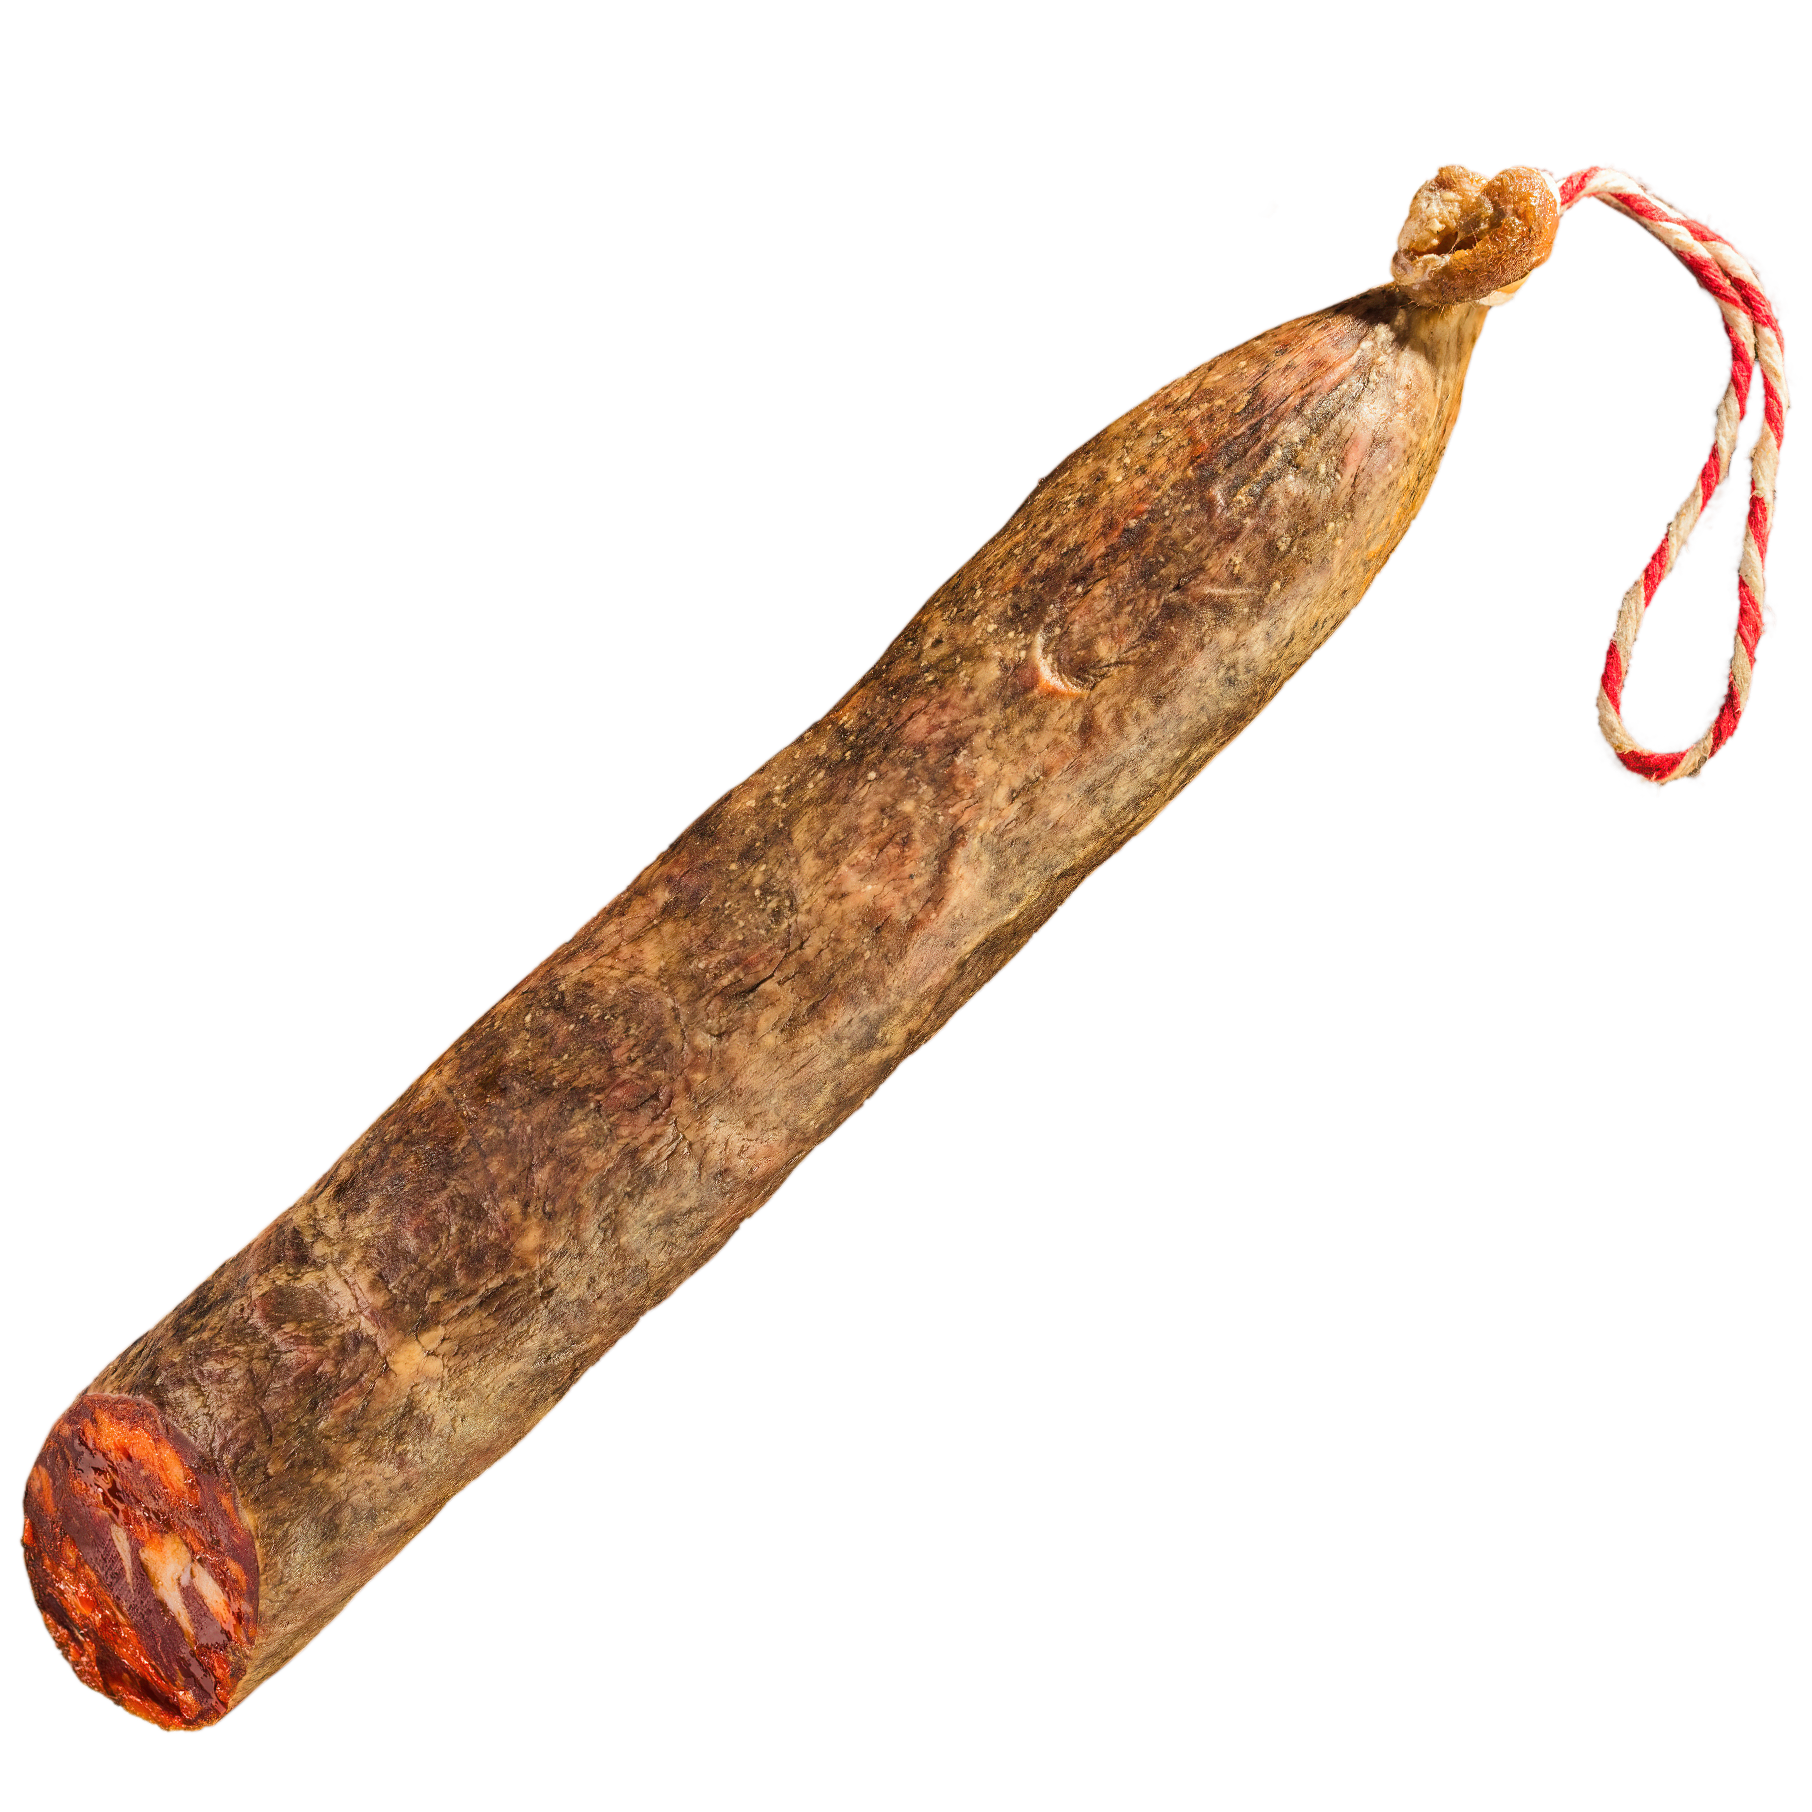 Chorizo cular ibérico de bellota